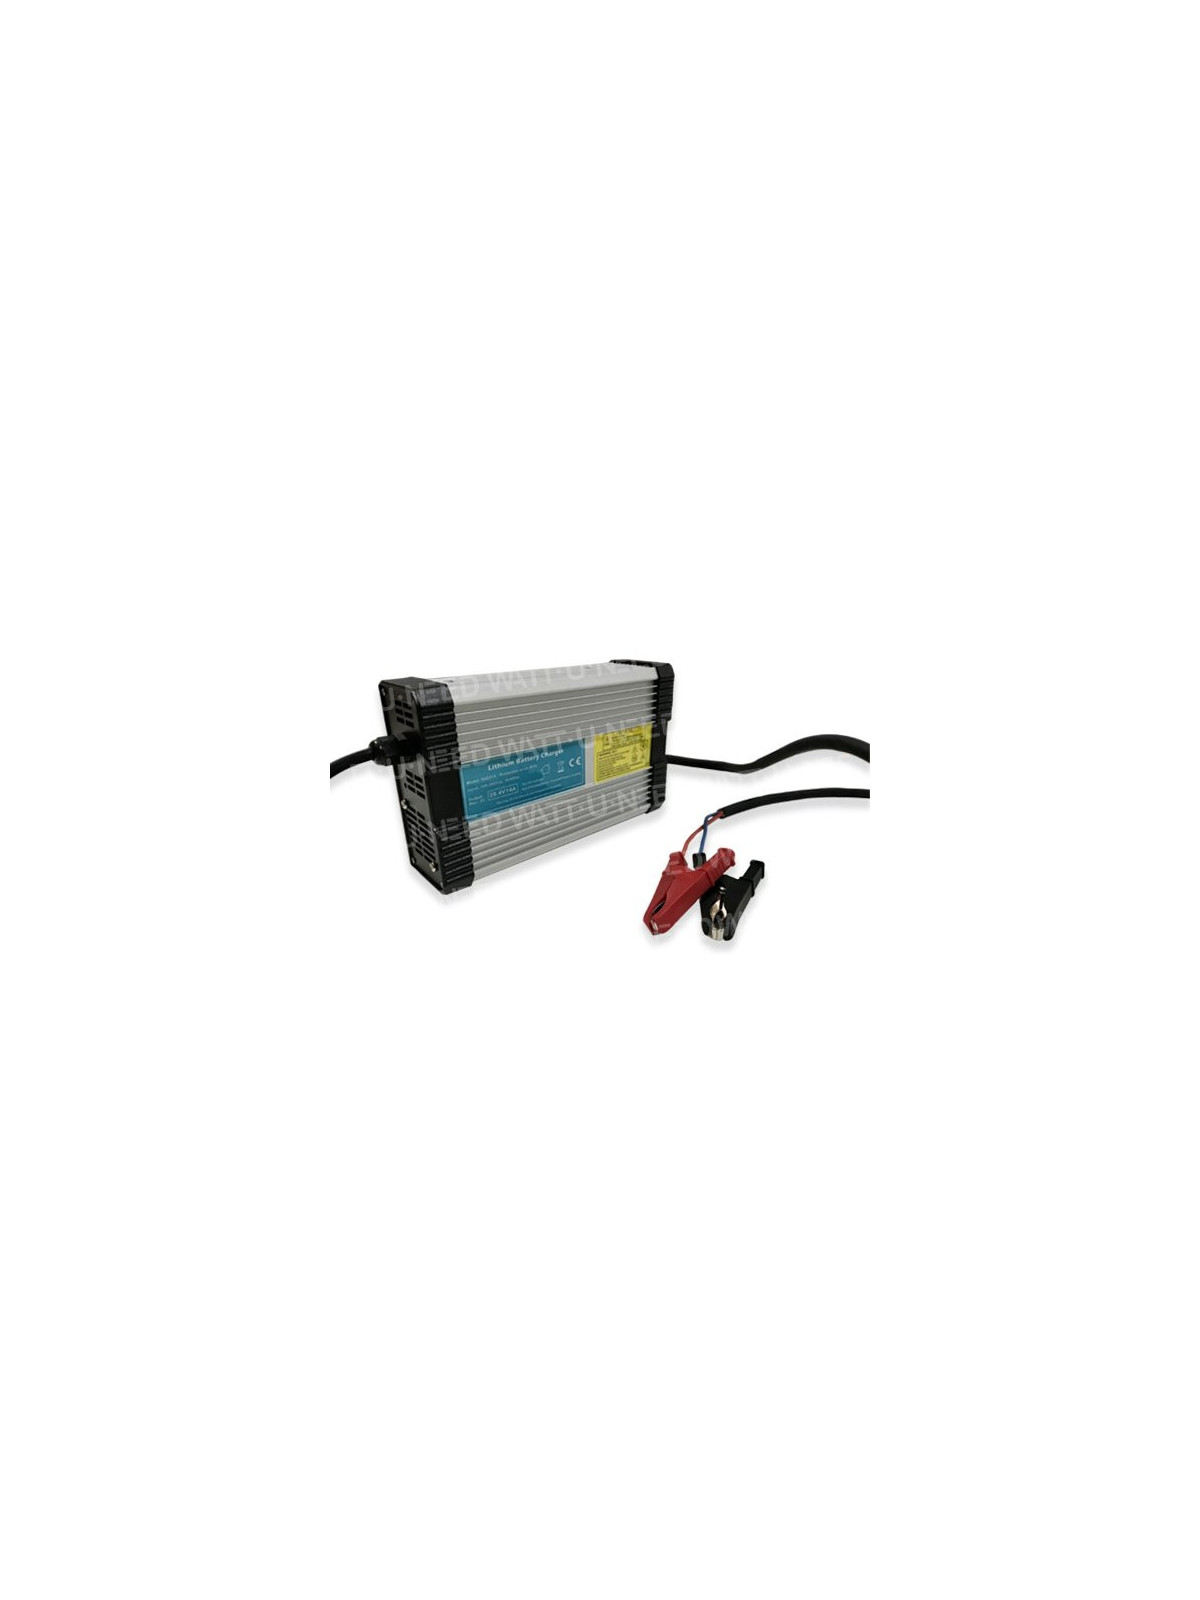 Cargador de batería lihium YZPOWER 14.6V 20A